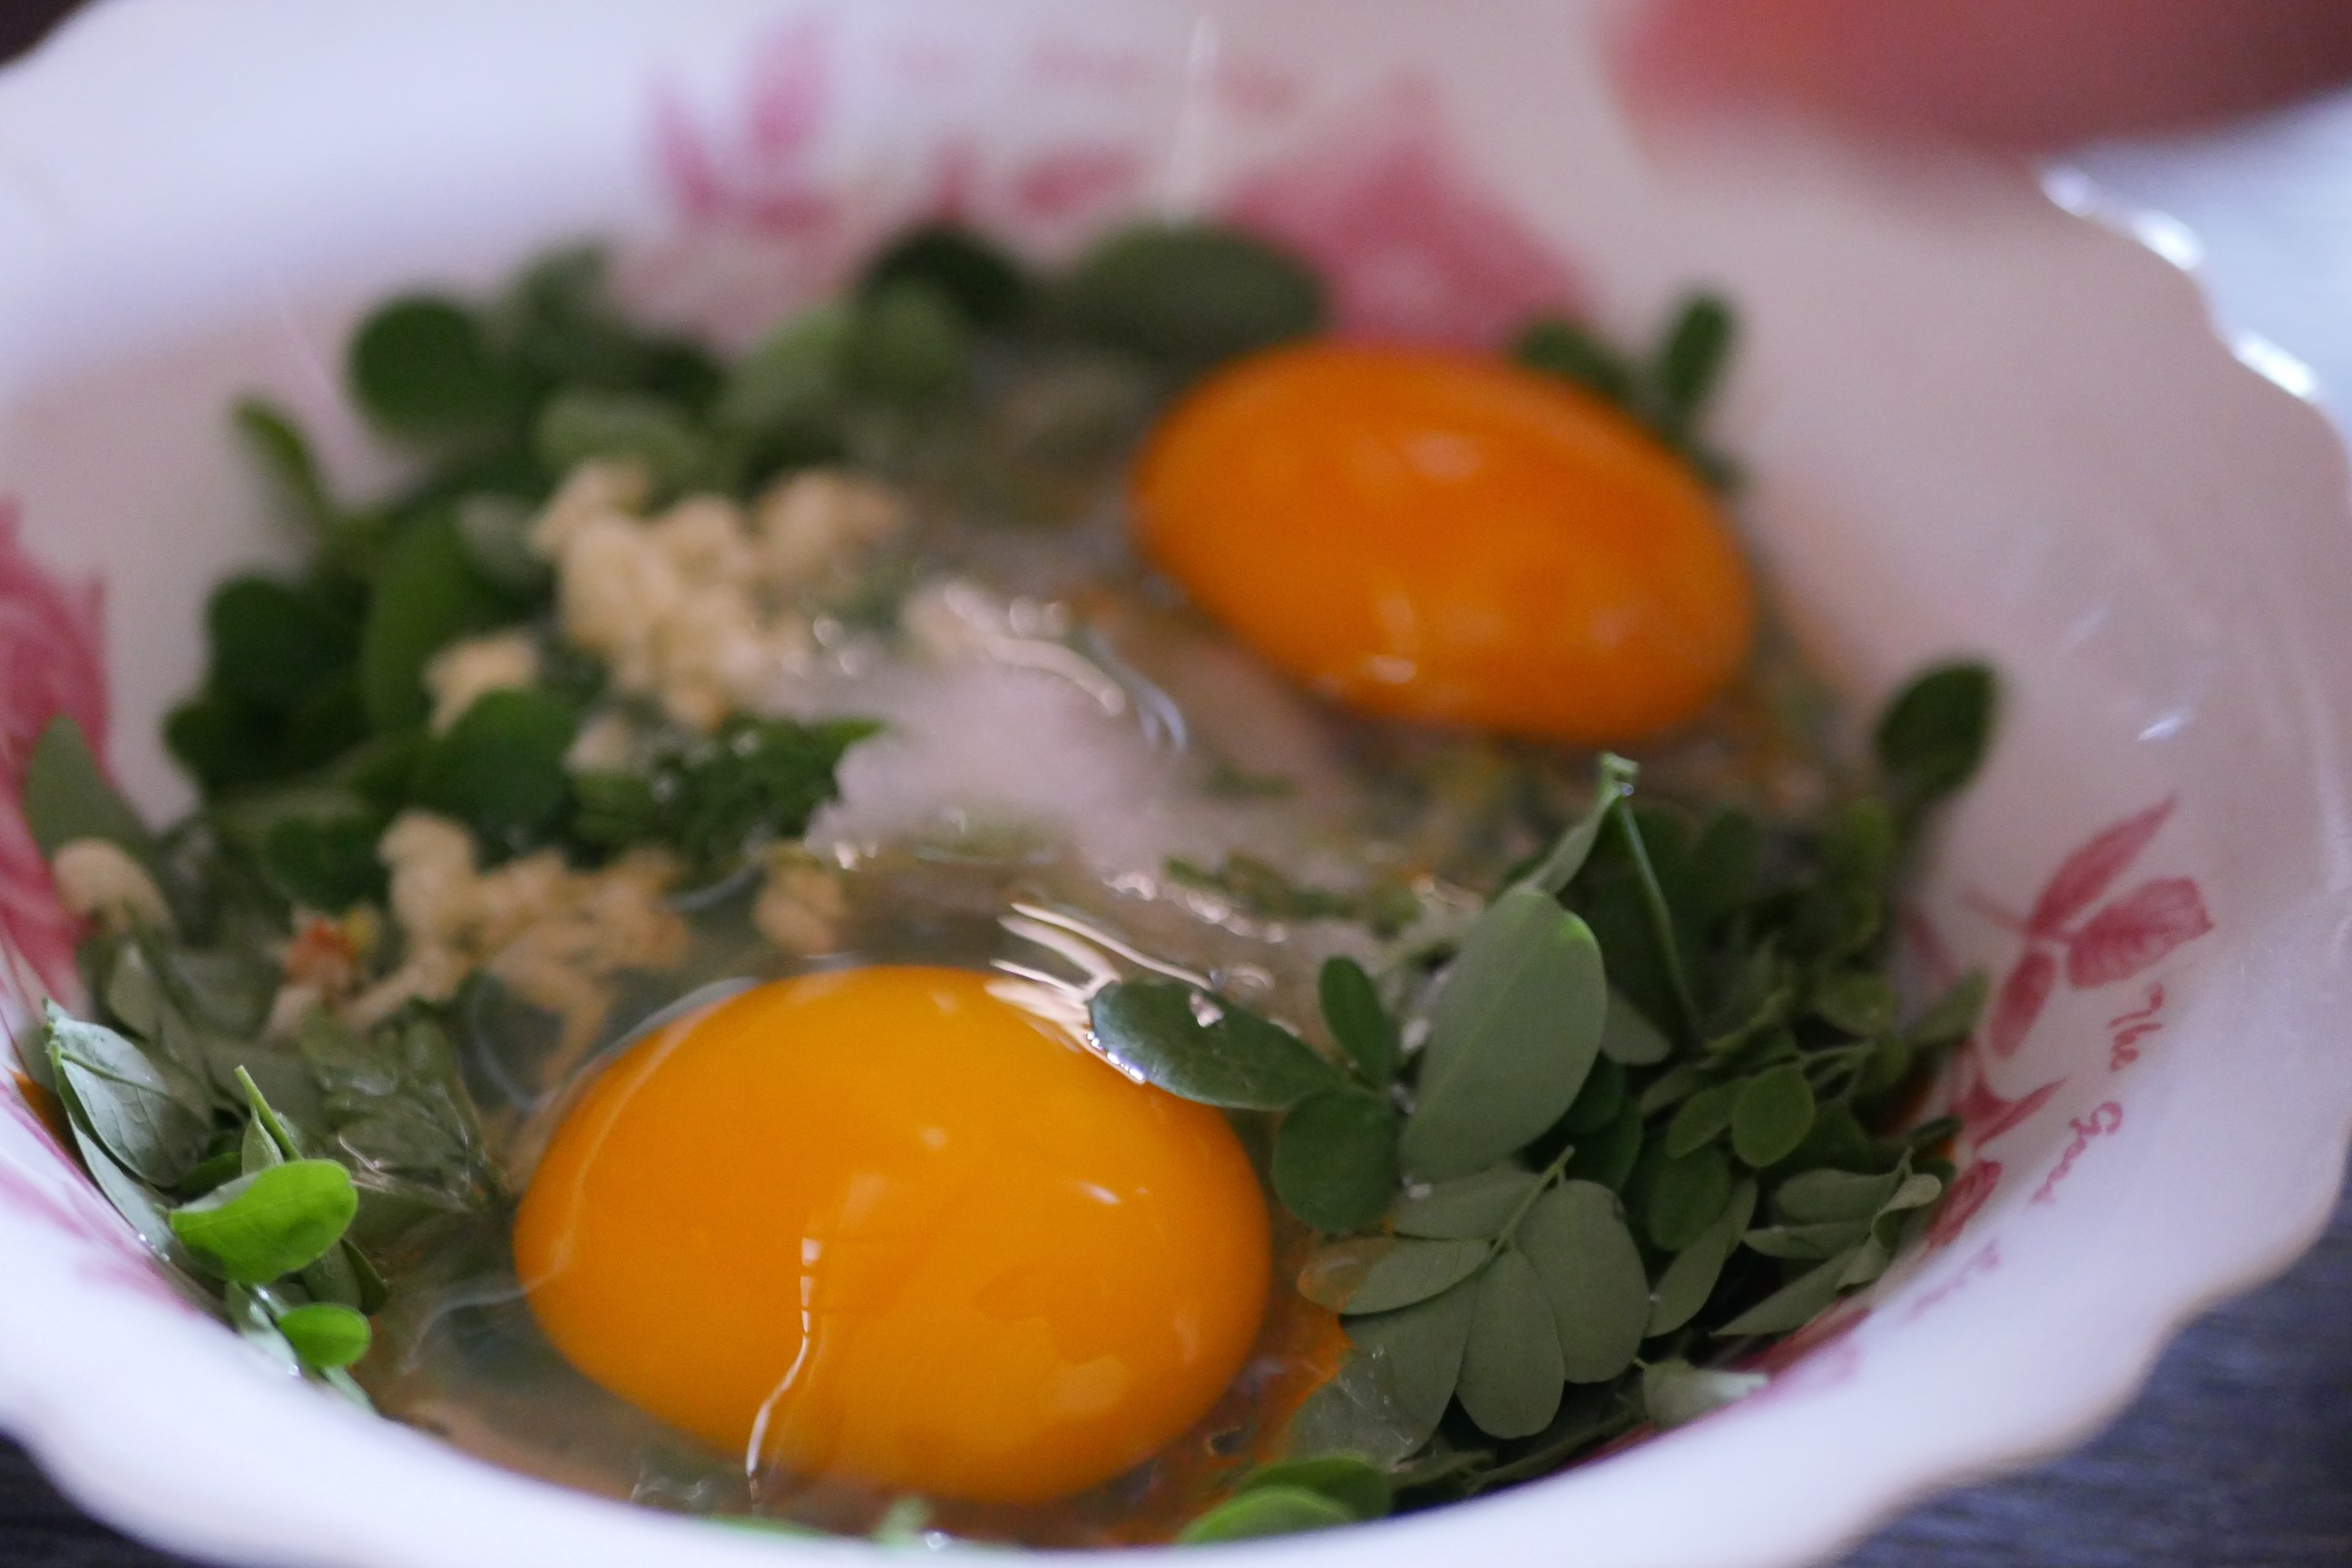 Khmer herb omelette made from duck eggs